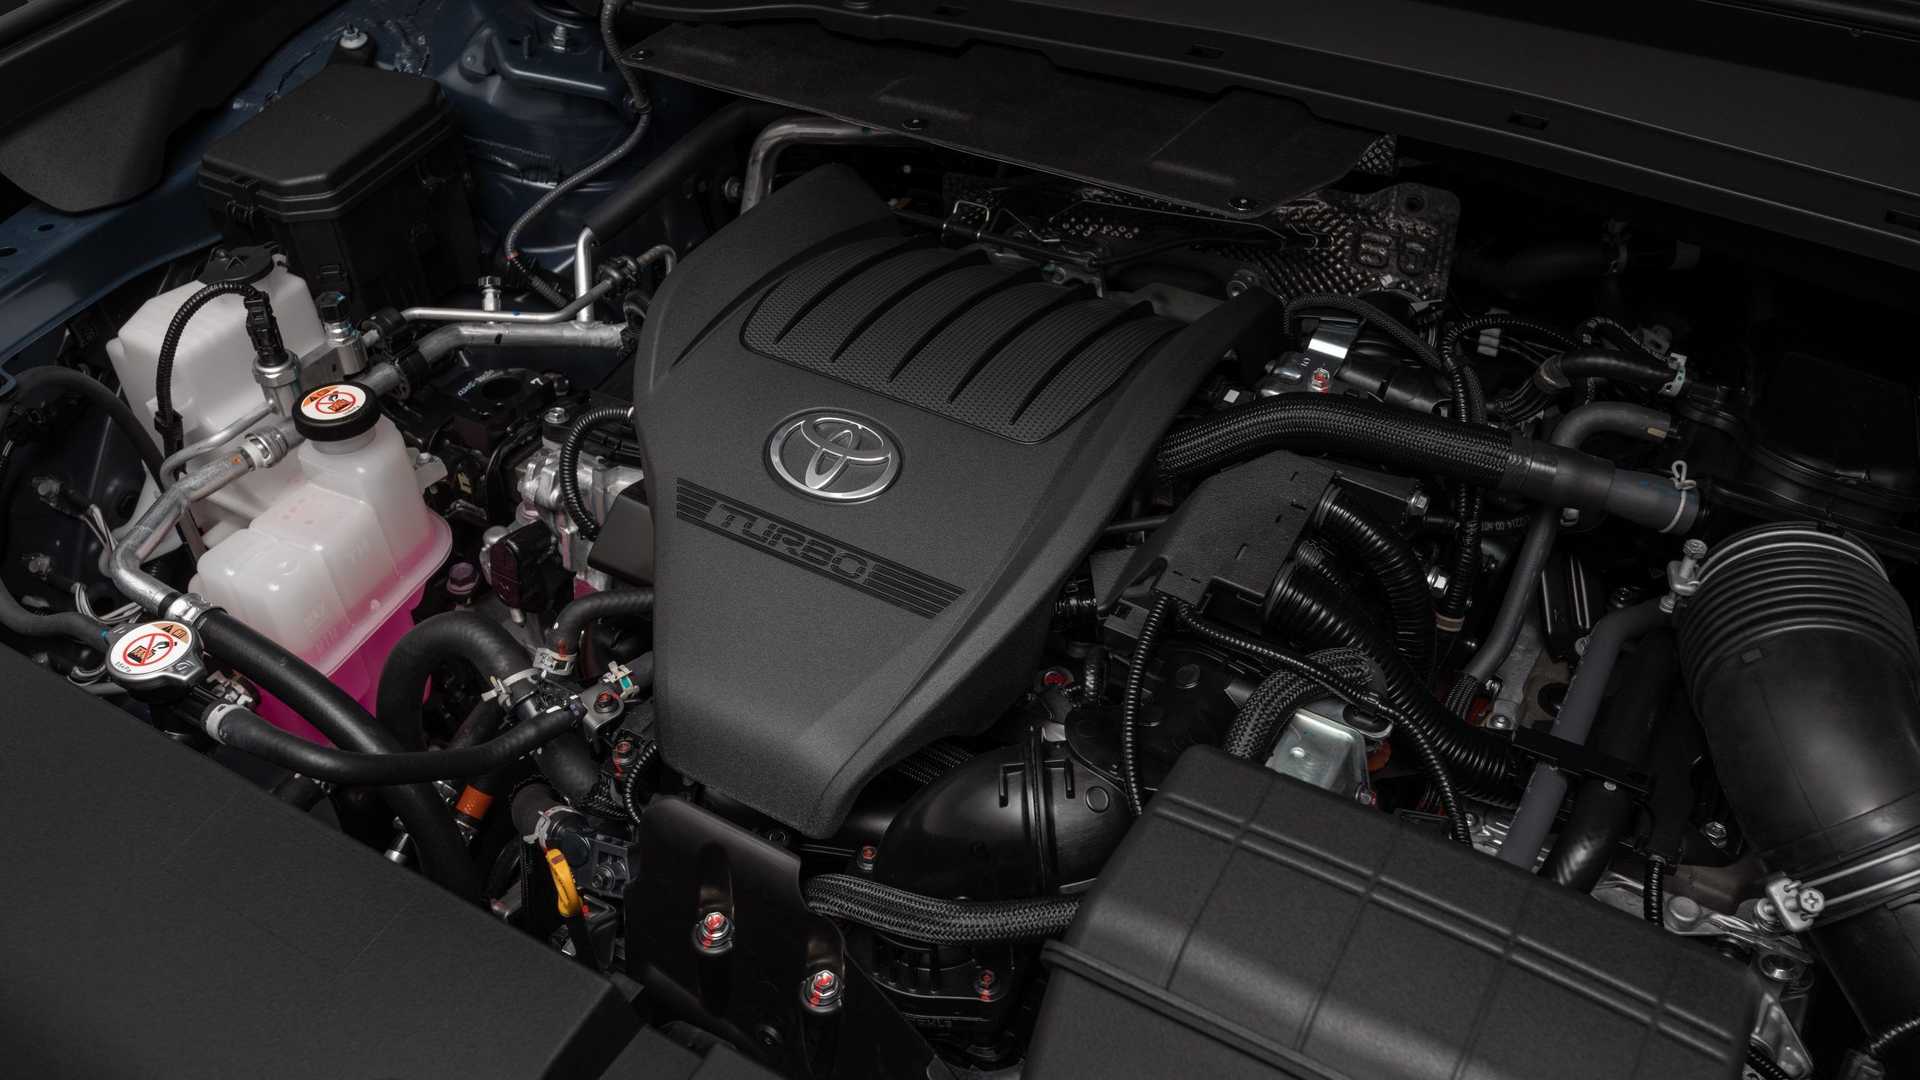 Yeni Toyota Grand Highlander tanıtıldı: 362 hp hibrit motor, 8 kişilik yaşam alanı